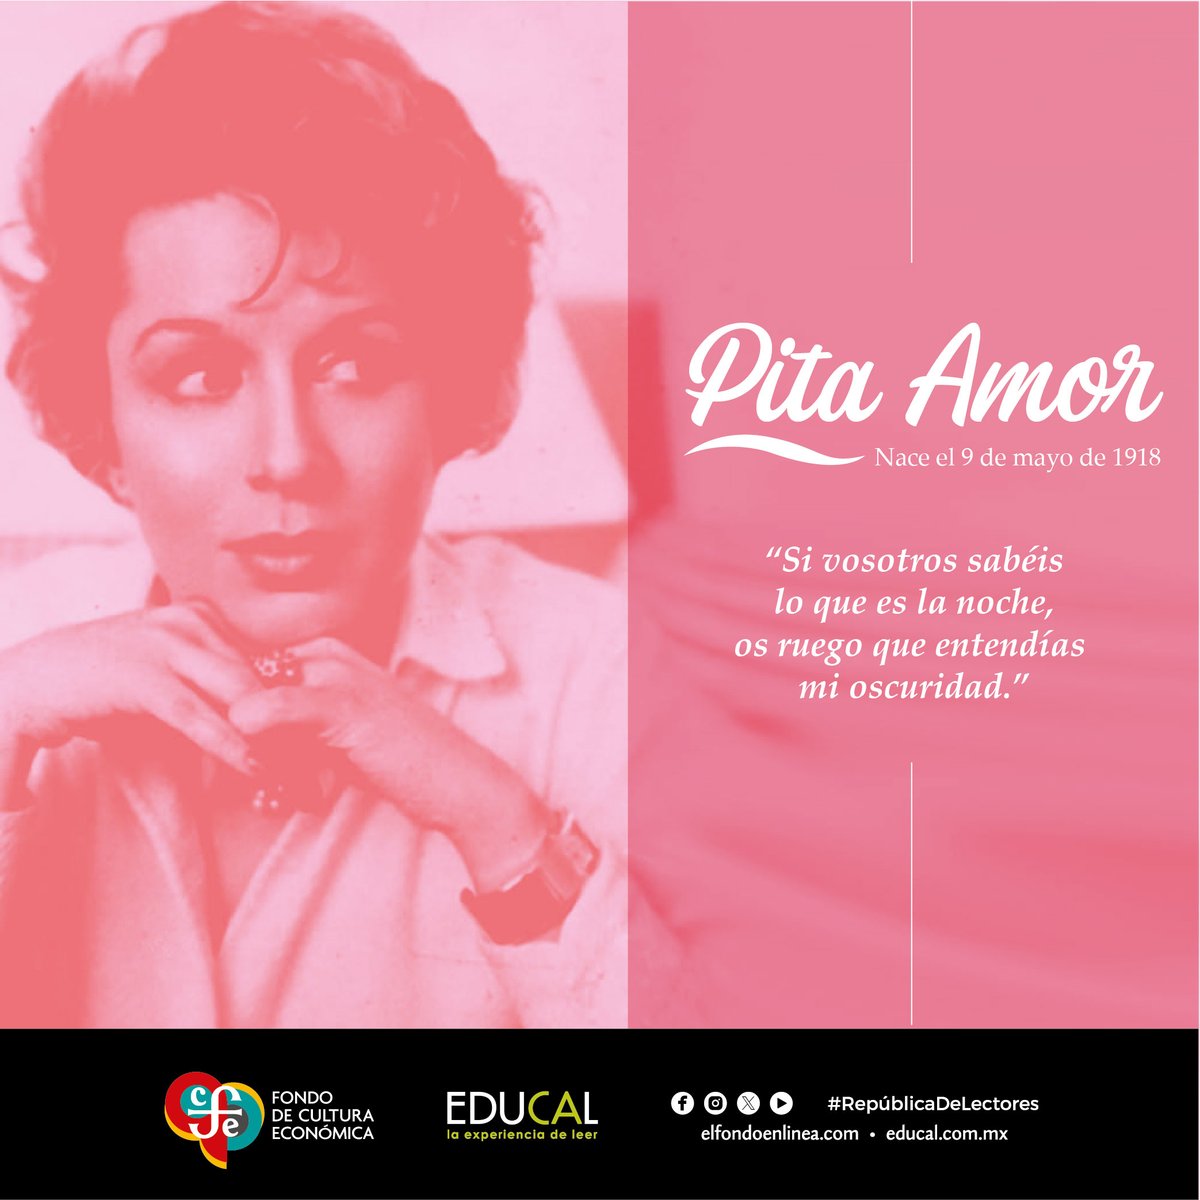 Un día como hoy de 1918 nace la escritora y poeta #PitaAmor, famosa por su talento, belleza e inteligencia. #RepúblicaDeLectores #LeerTransforma